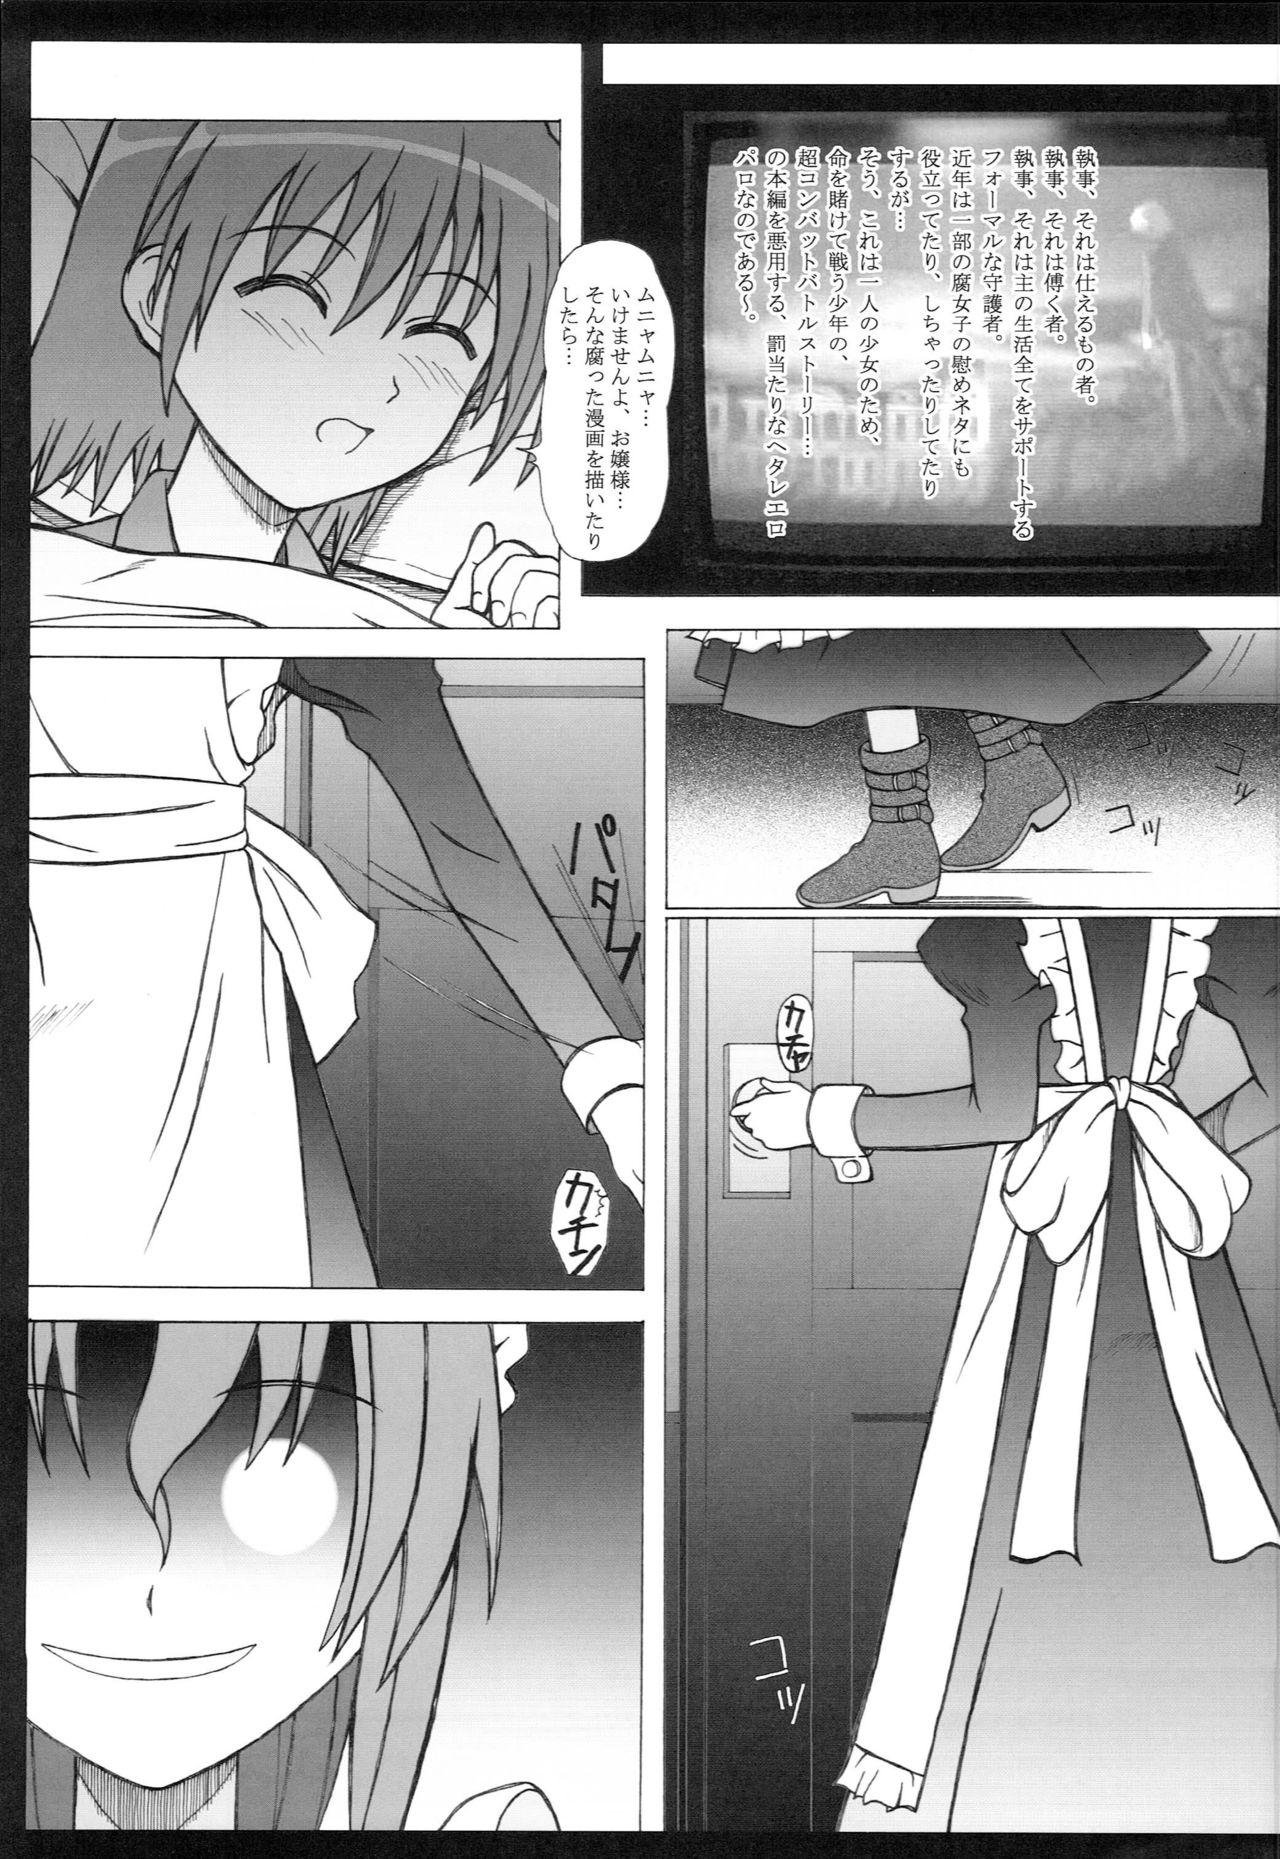 Sex Party Seinen Hana to Ribon 28 - Hayate no gotoku Argentina - Page 2